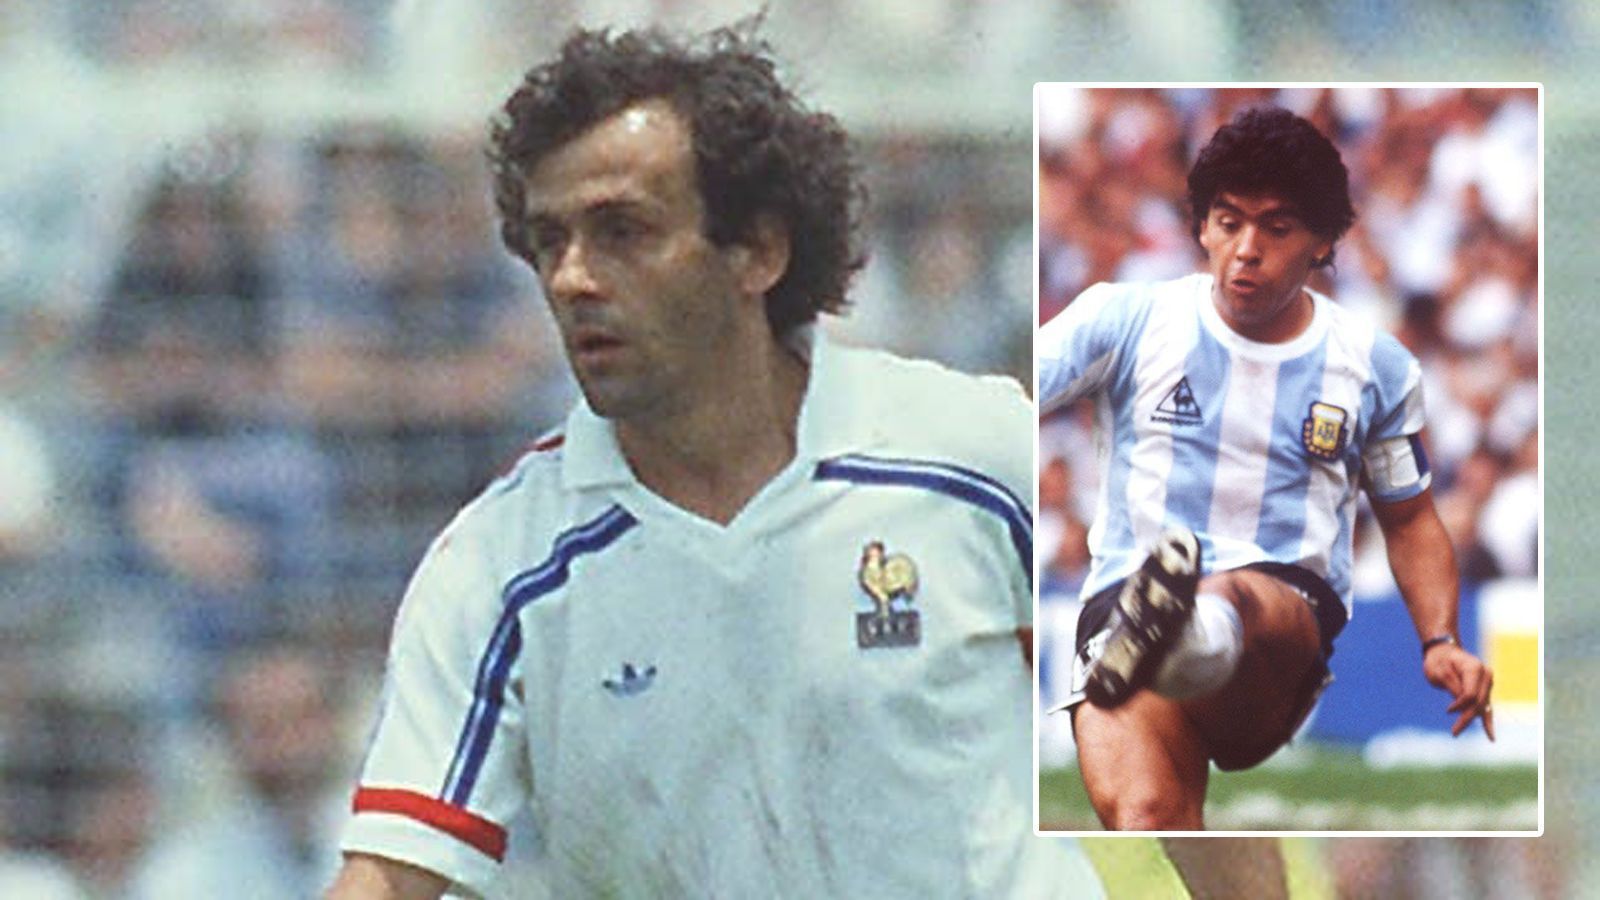 
                <strong>Als Belgien 1986 zuletzt im WM-Halbfinale steht ...</strong><br>
                ... heißt der amtierende Weltfußballer Michel Platini. Der Franzose wird später von Maradona abgelöst.
              